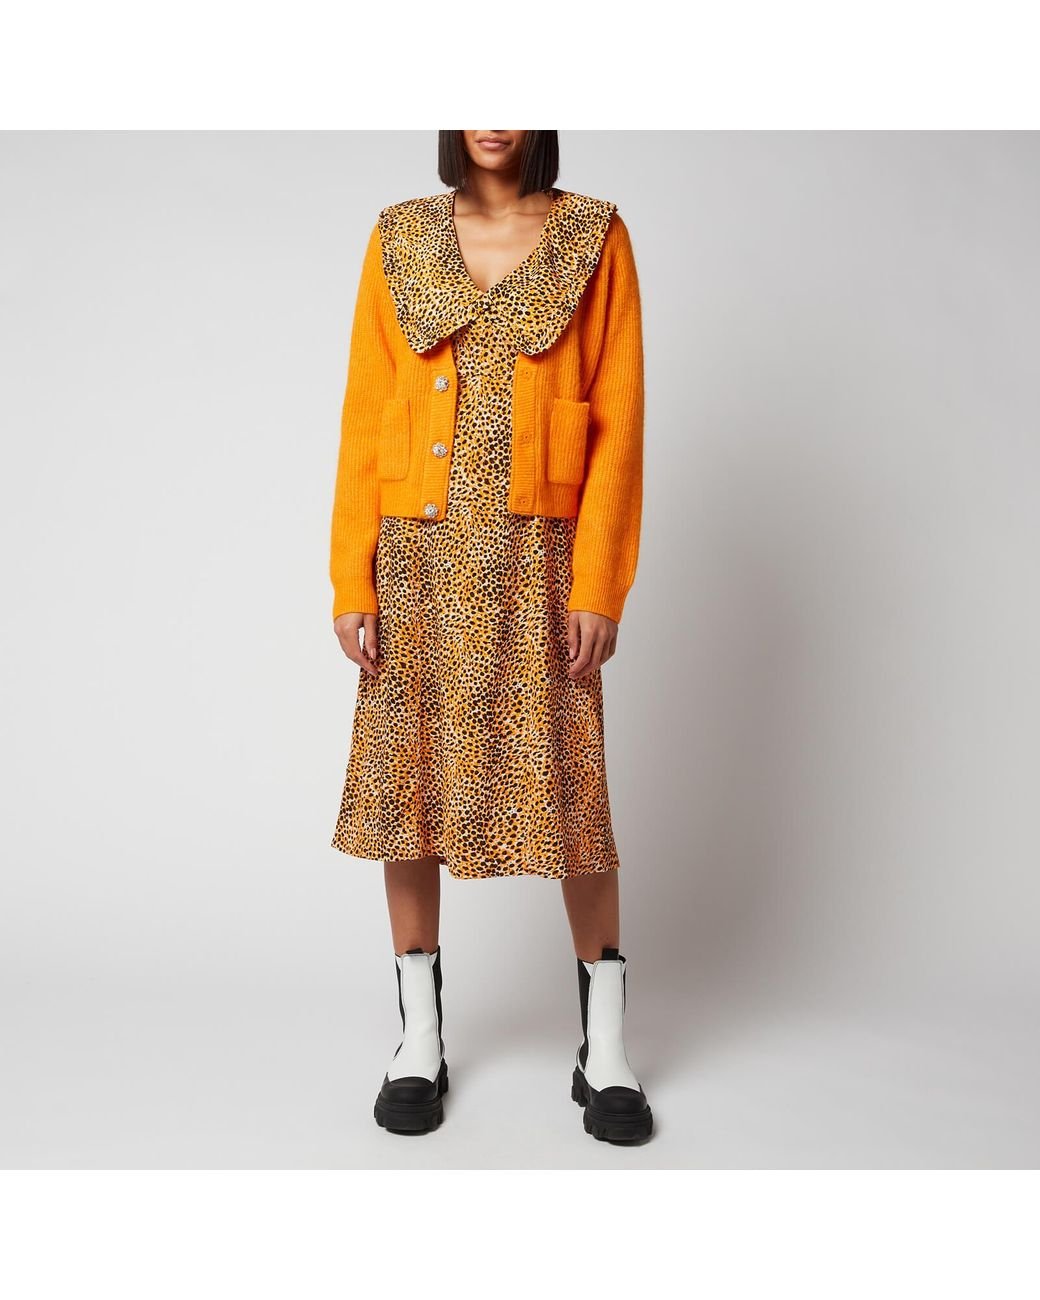 Ganni Soft Wool Knit Cardigan in Orange | Lyst